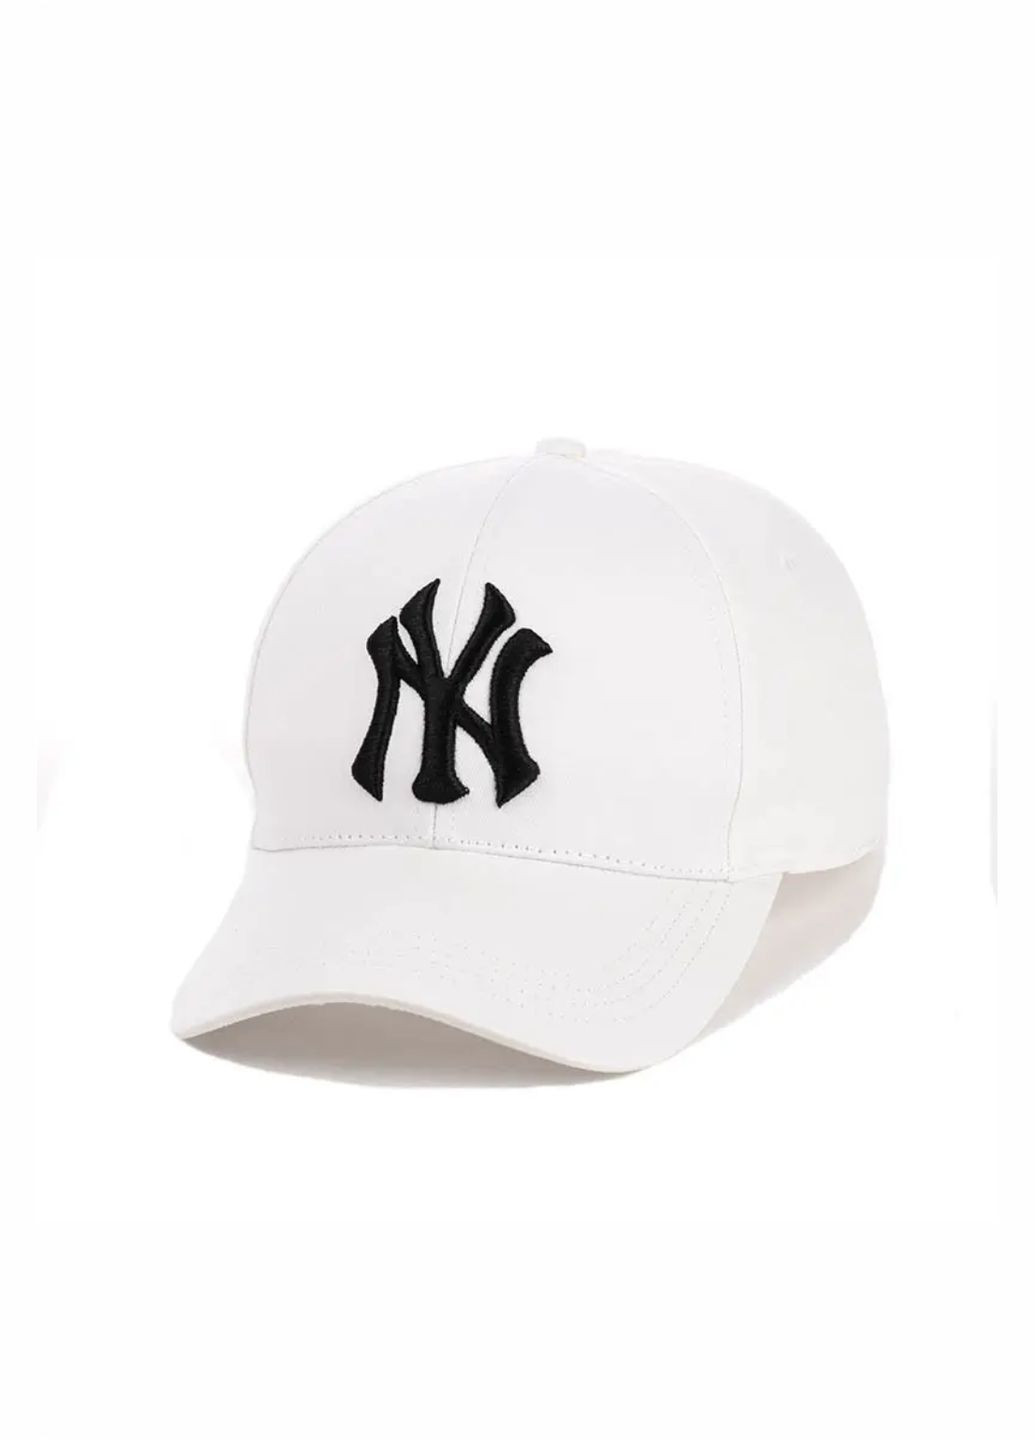 Молодежная кепка Нью Йорк / New York S/M No Brand кепка унісекс (278649849)